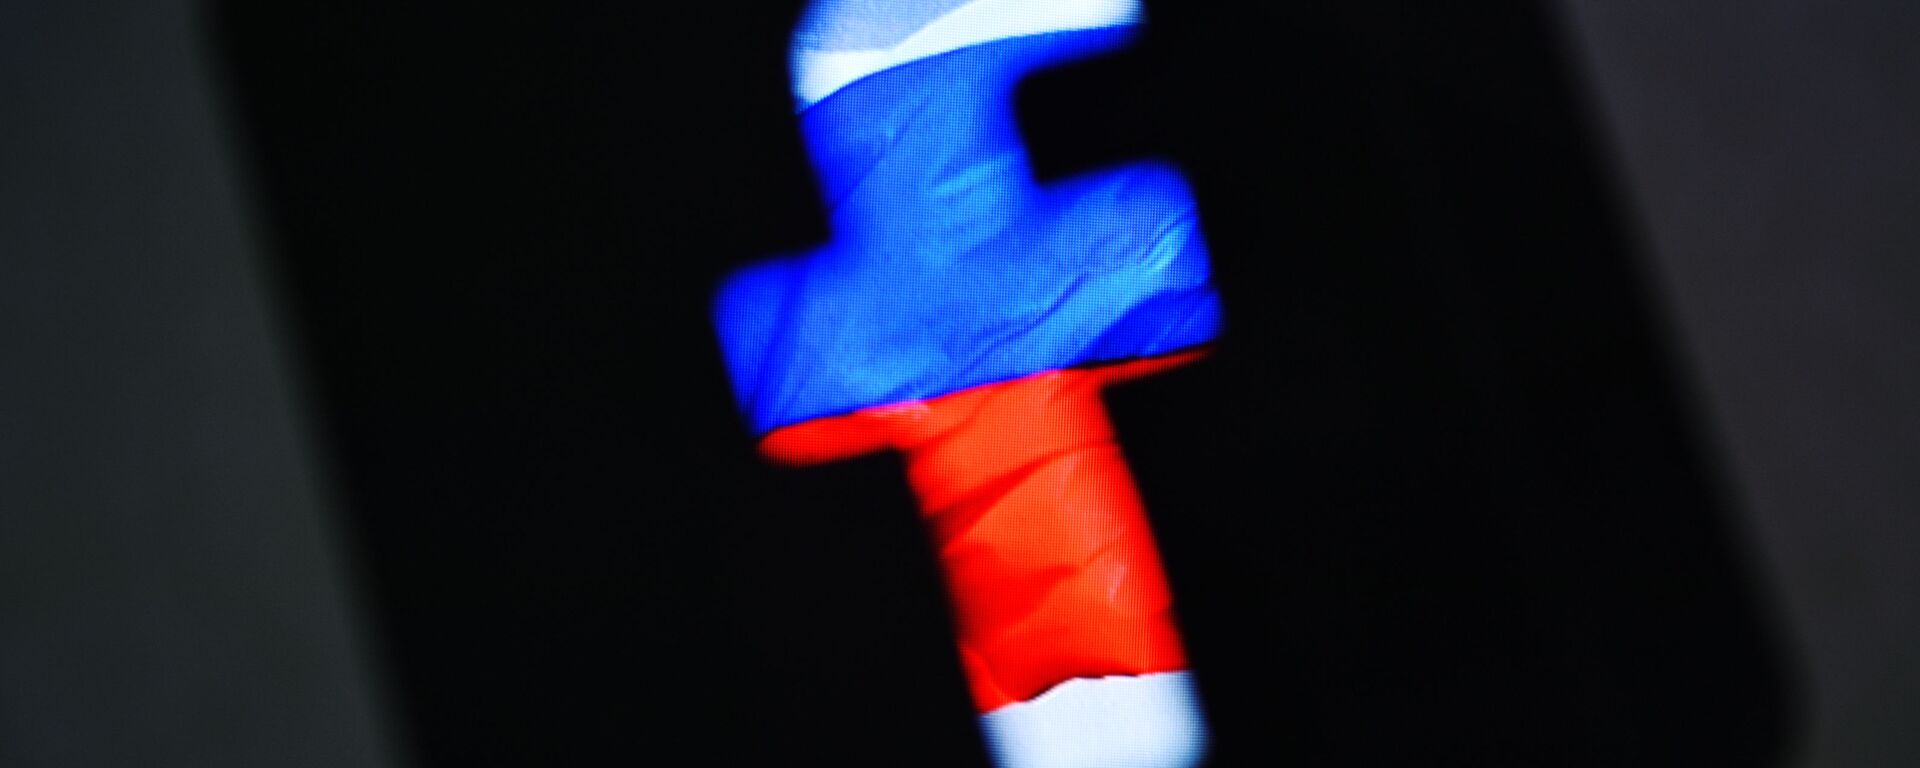 Лого друштвене мреже Фејсбук у бојама руске заставе - Sputnik Србија, 1920, 24.05.2021